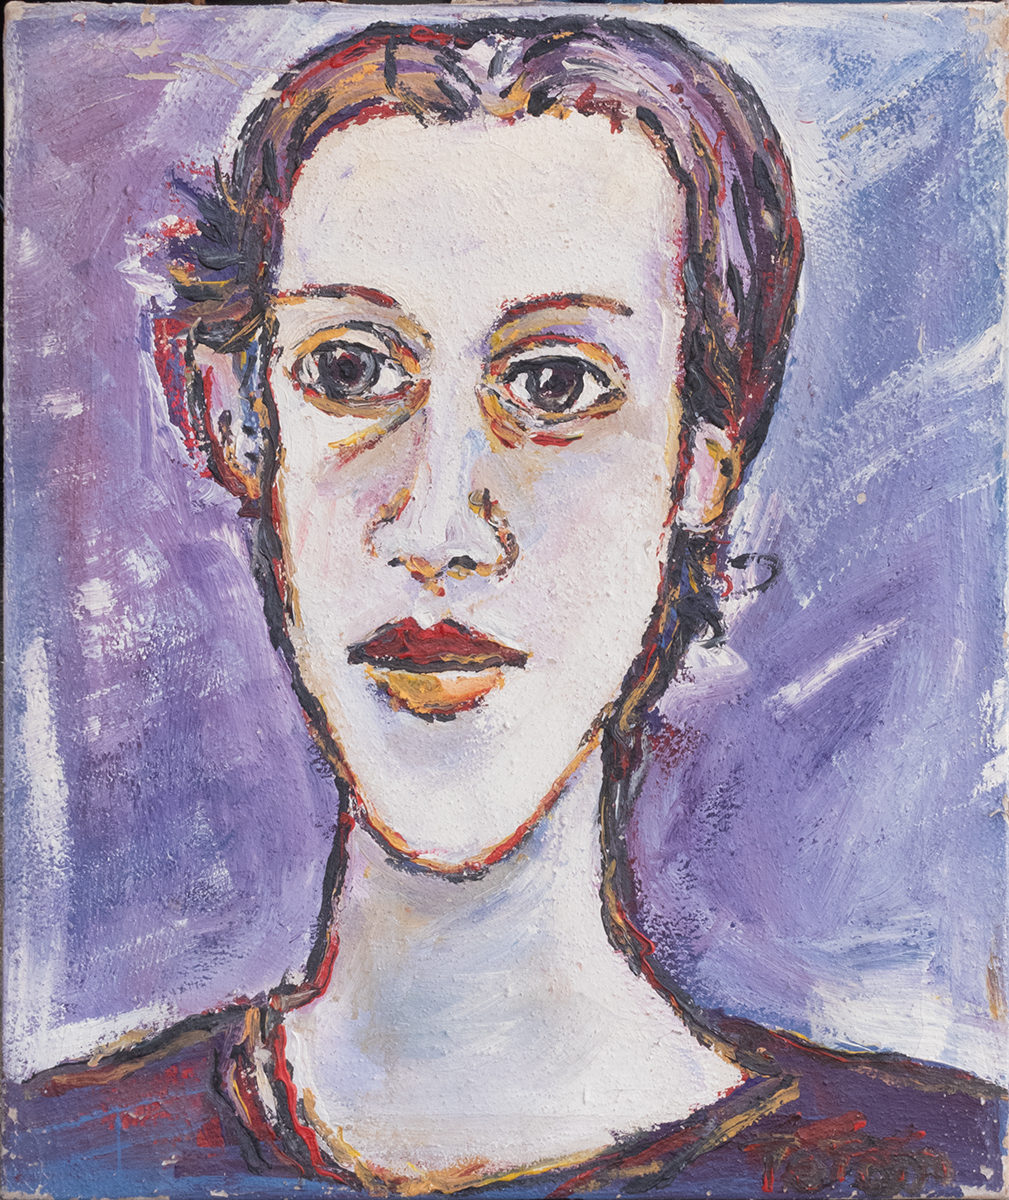 Retrato sobre violeta mujer